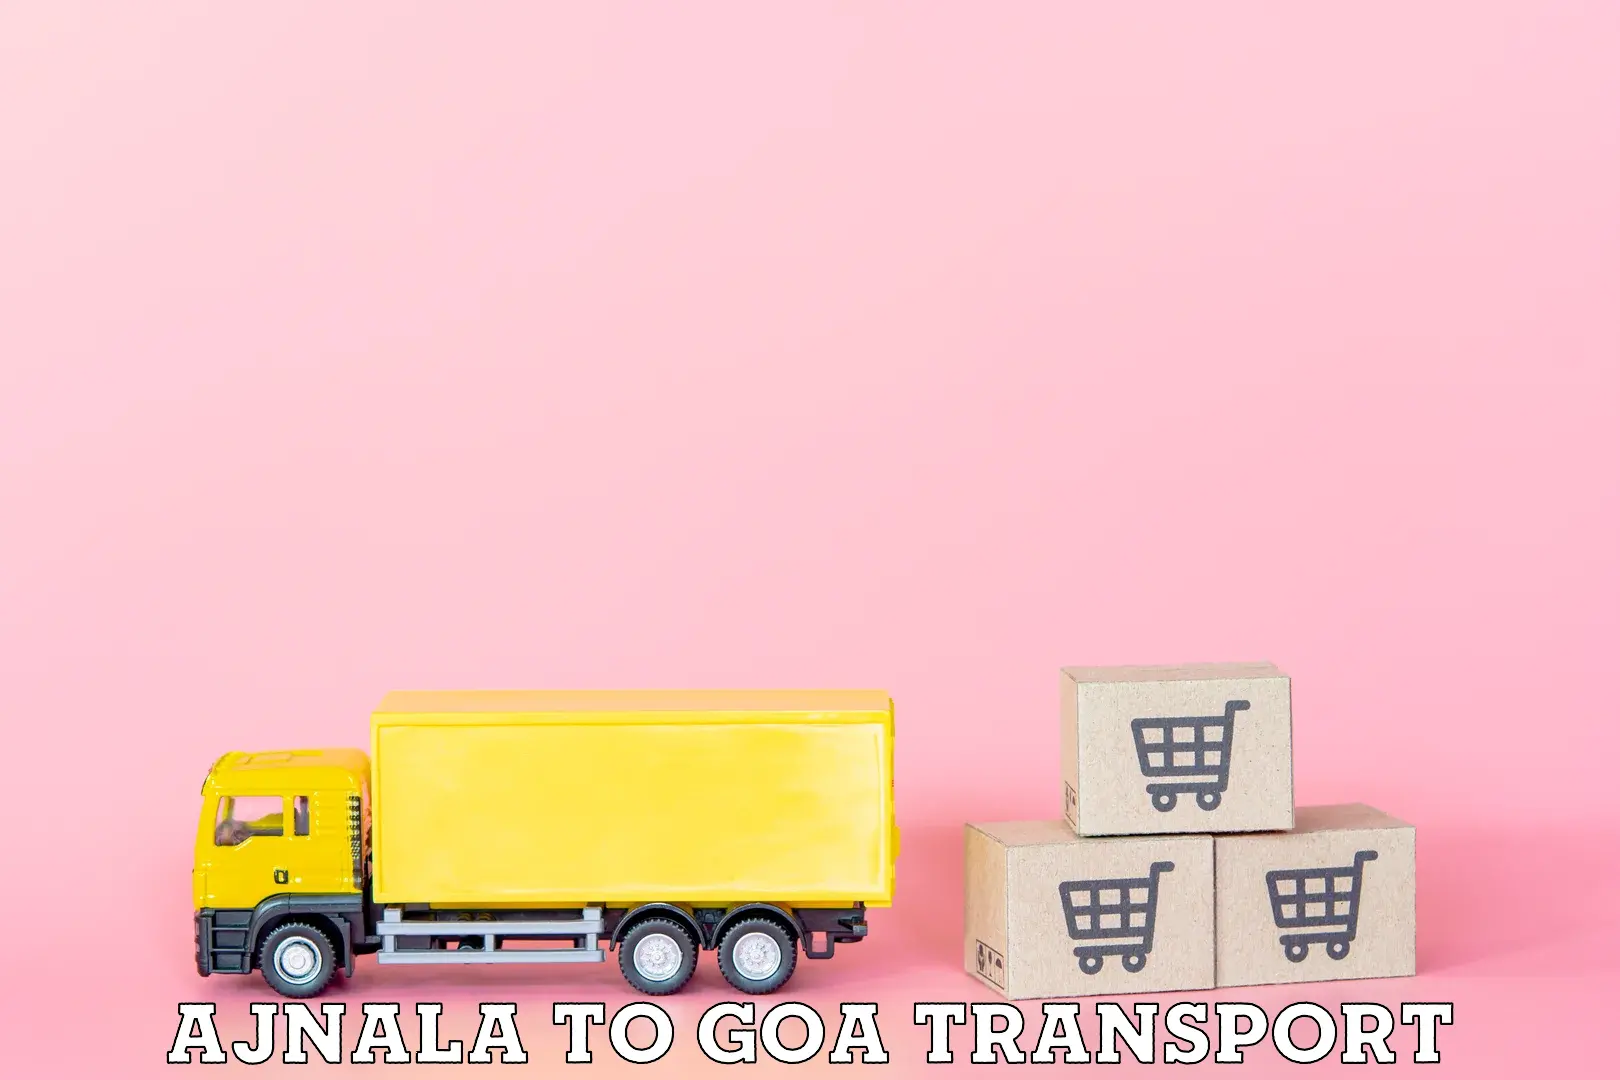 Land transport services in Ajnala to Panjim